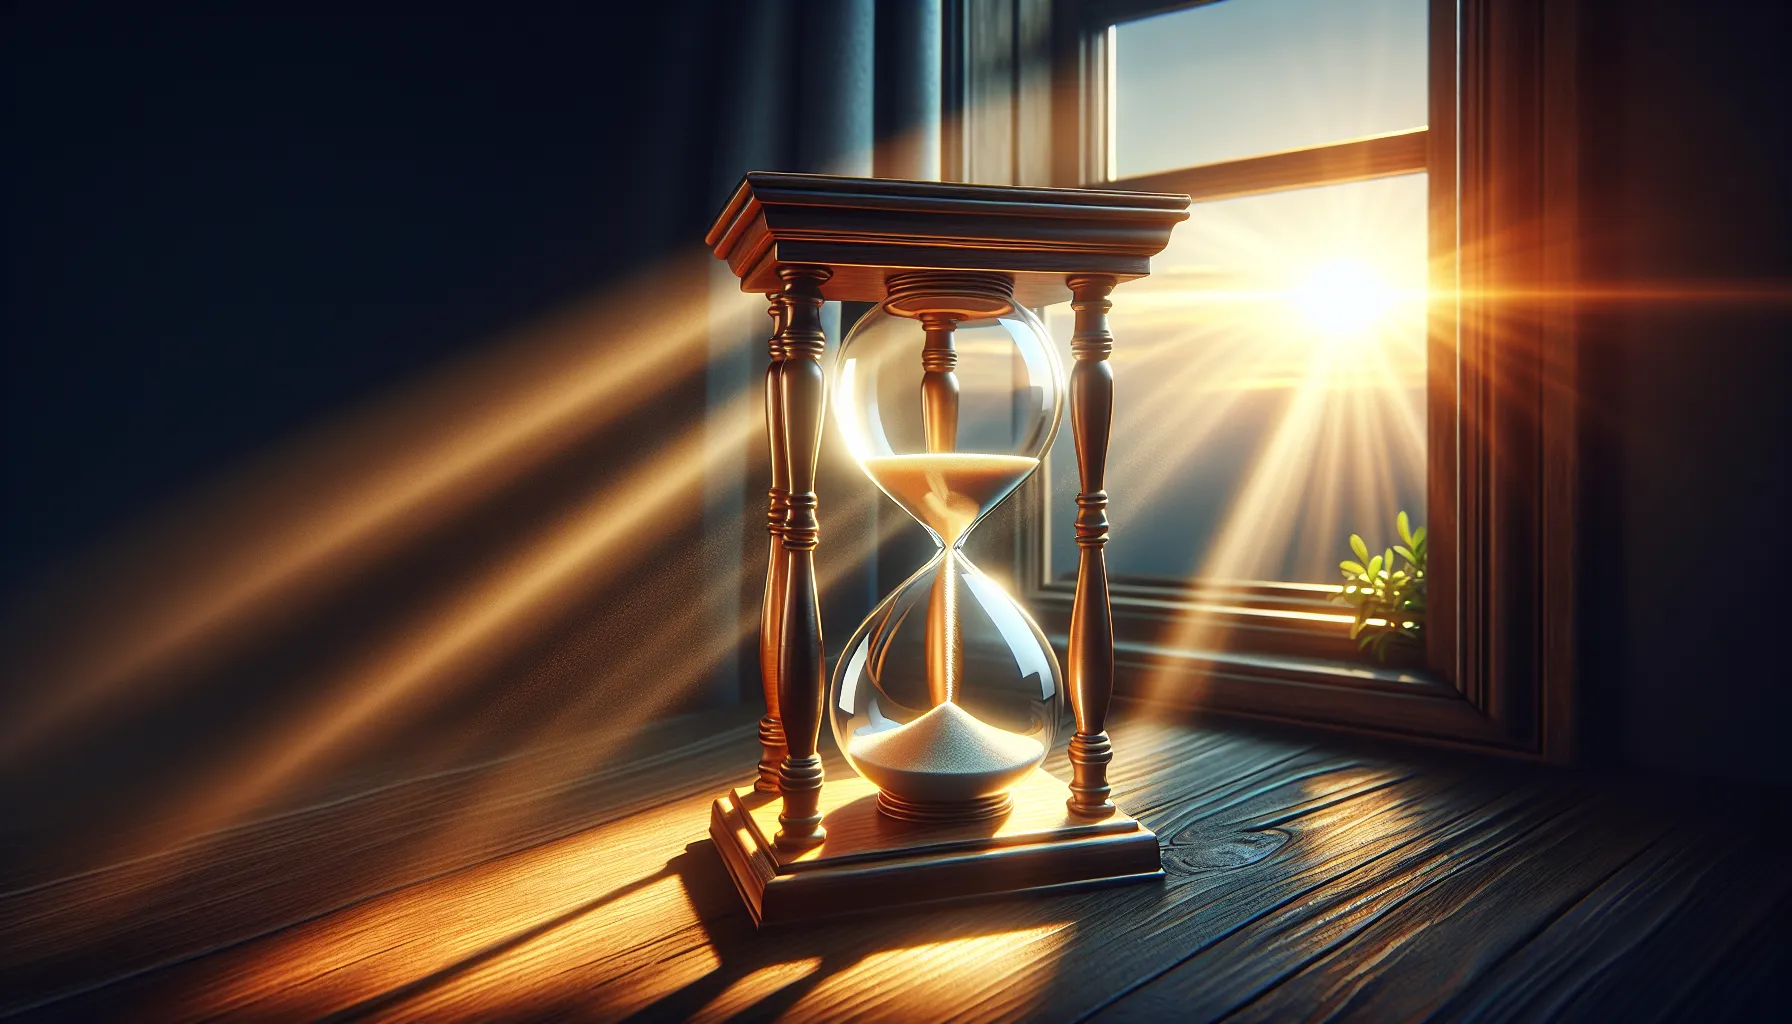 'Ilustración de un reloj de arena con rayos de sol entrando por la ventana, simbolizando la importancia de ser conscientes del tiempo que tenemos y de aprovecharlo sabiamente'.